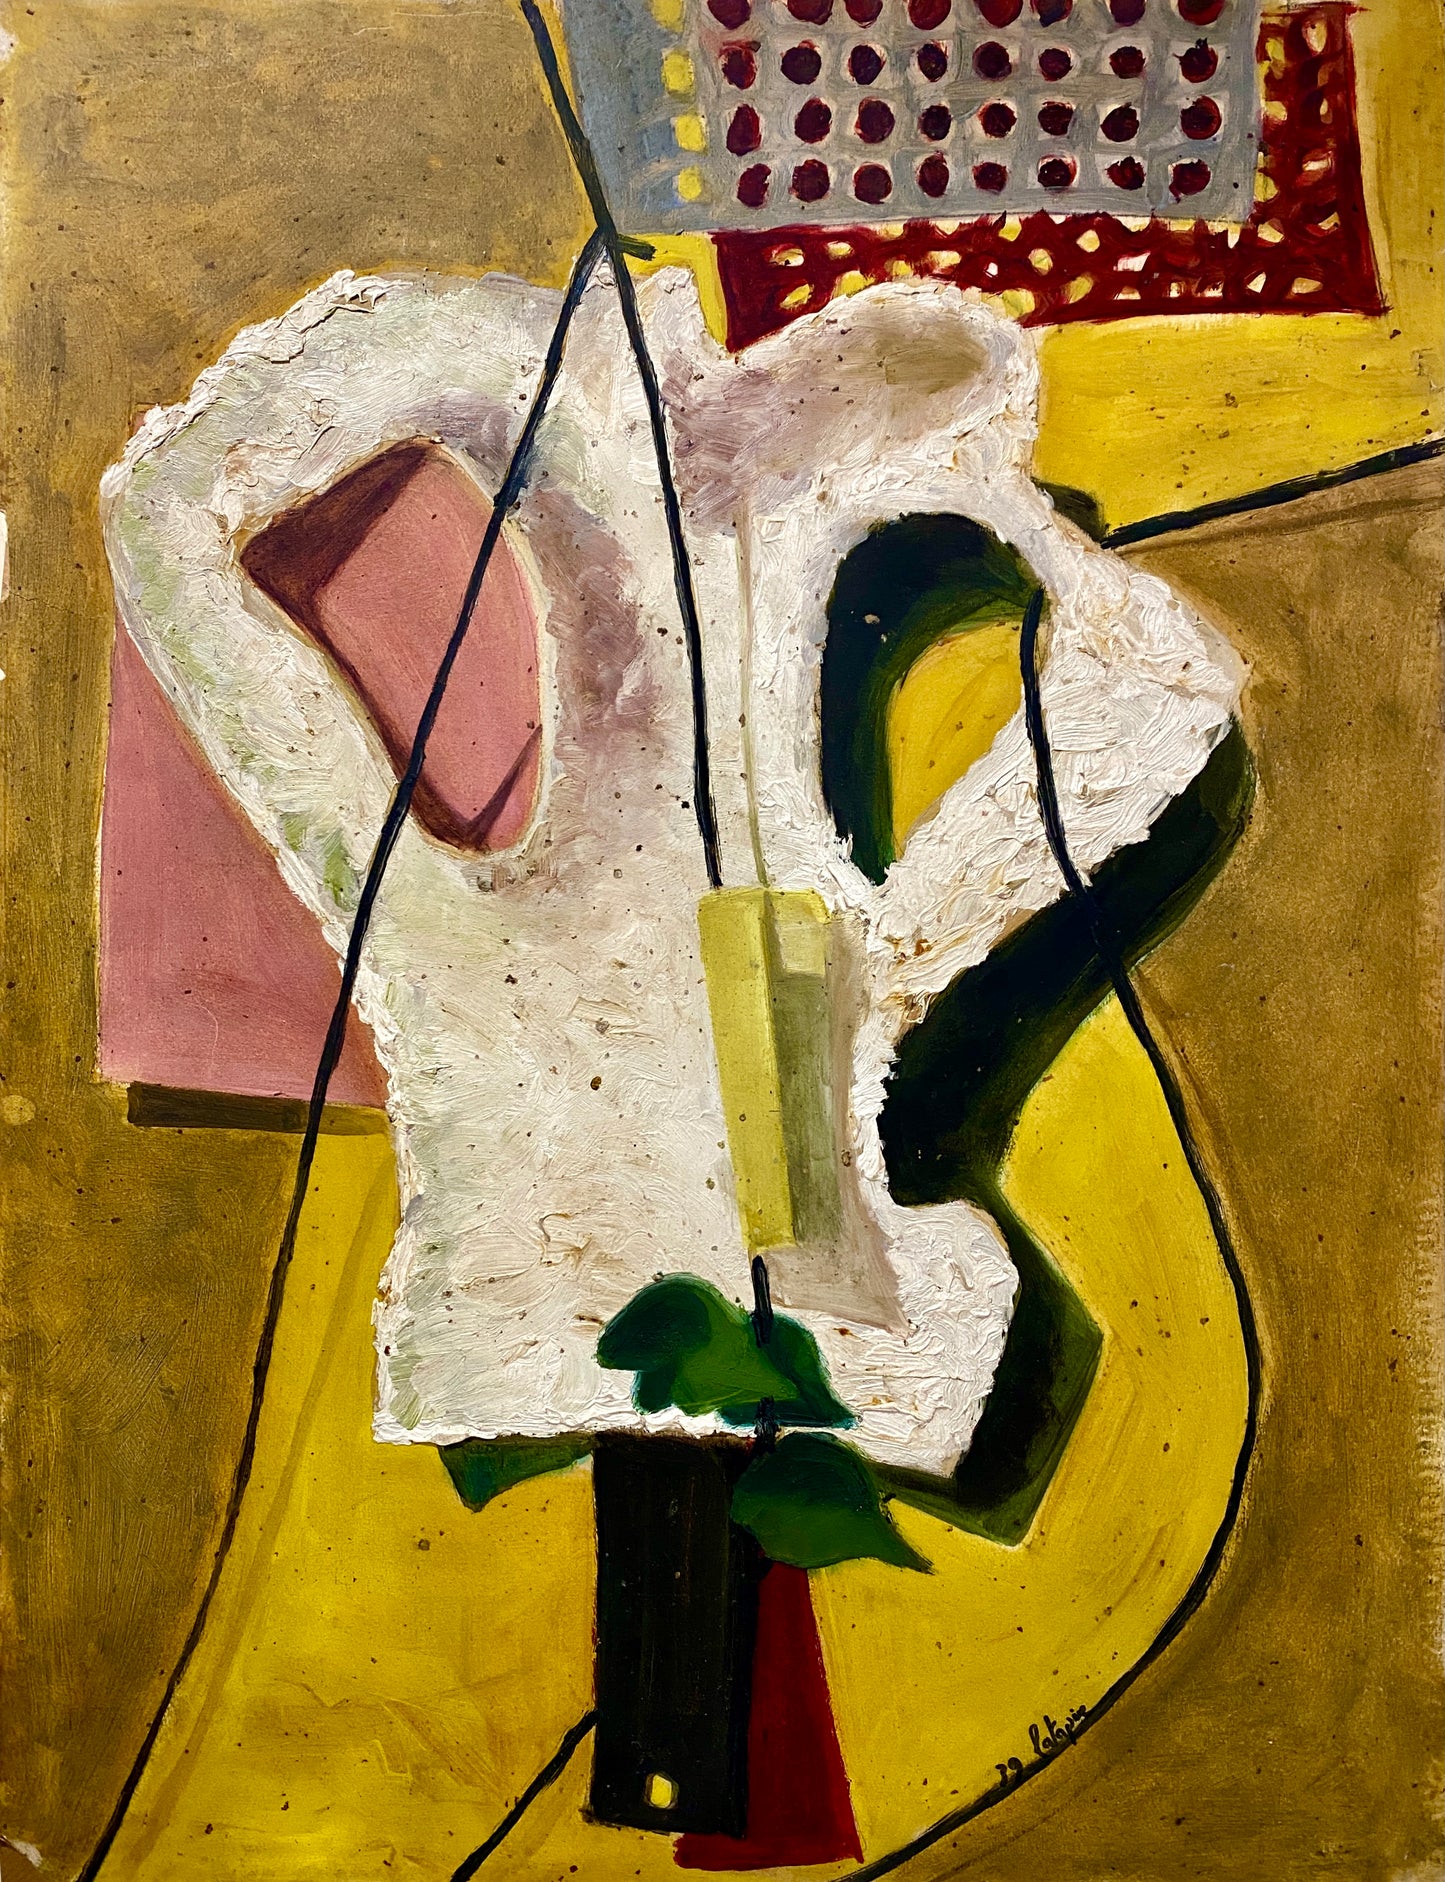 Art Deco period "Cubist-Surrealist" by Louis LATAPIE 1891-1972